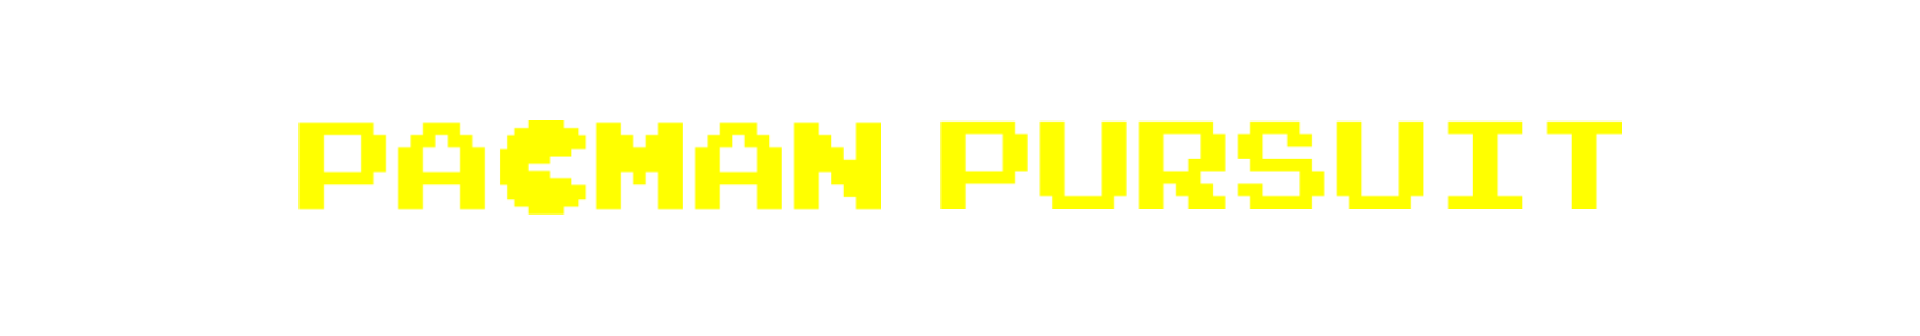 Pacman Pursuit